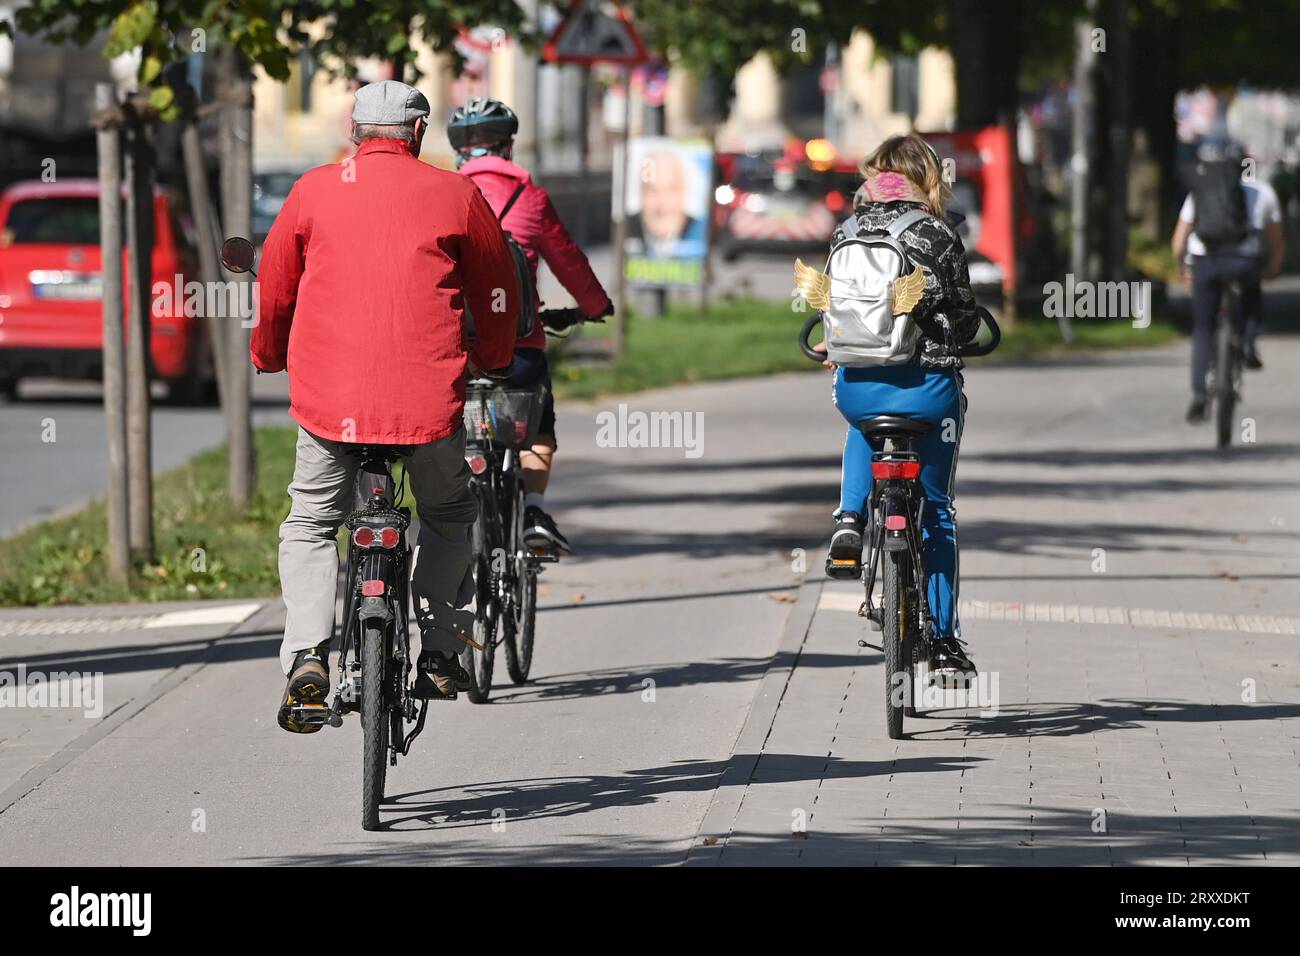 Radfahrer fahren mit ihren Raedern,Fahrraedern auf einem Radweg in Muenchen im Stadtverkehr,Rad fahren. *** cyclists riding their bikes,bicycles on a bike path in munich city traffic,cycling Stock Photo